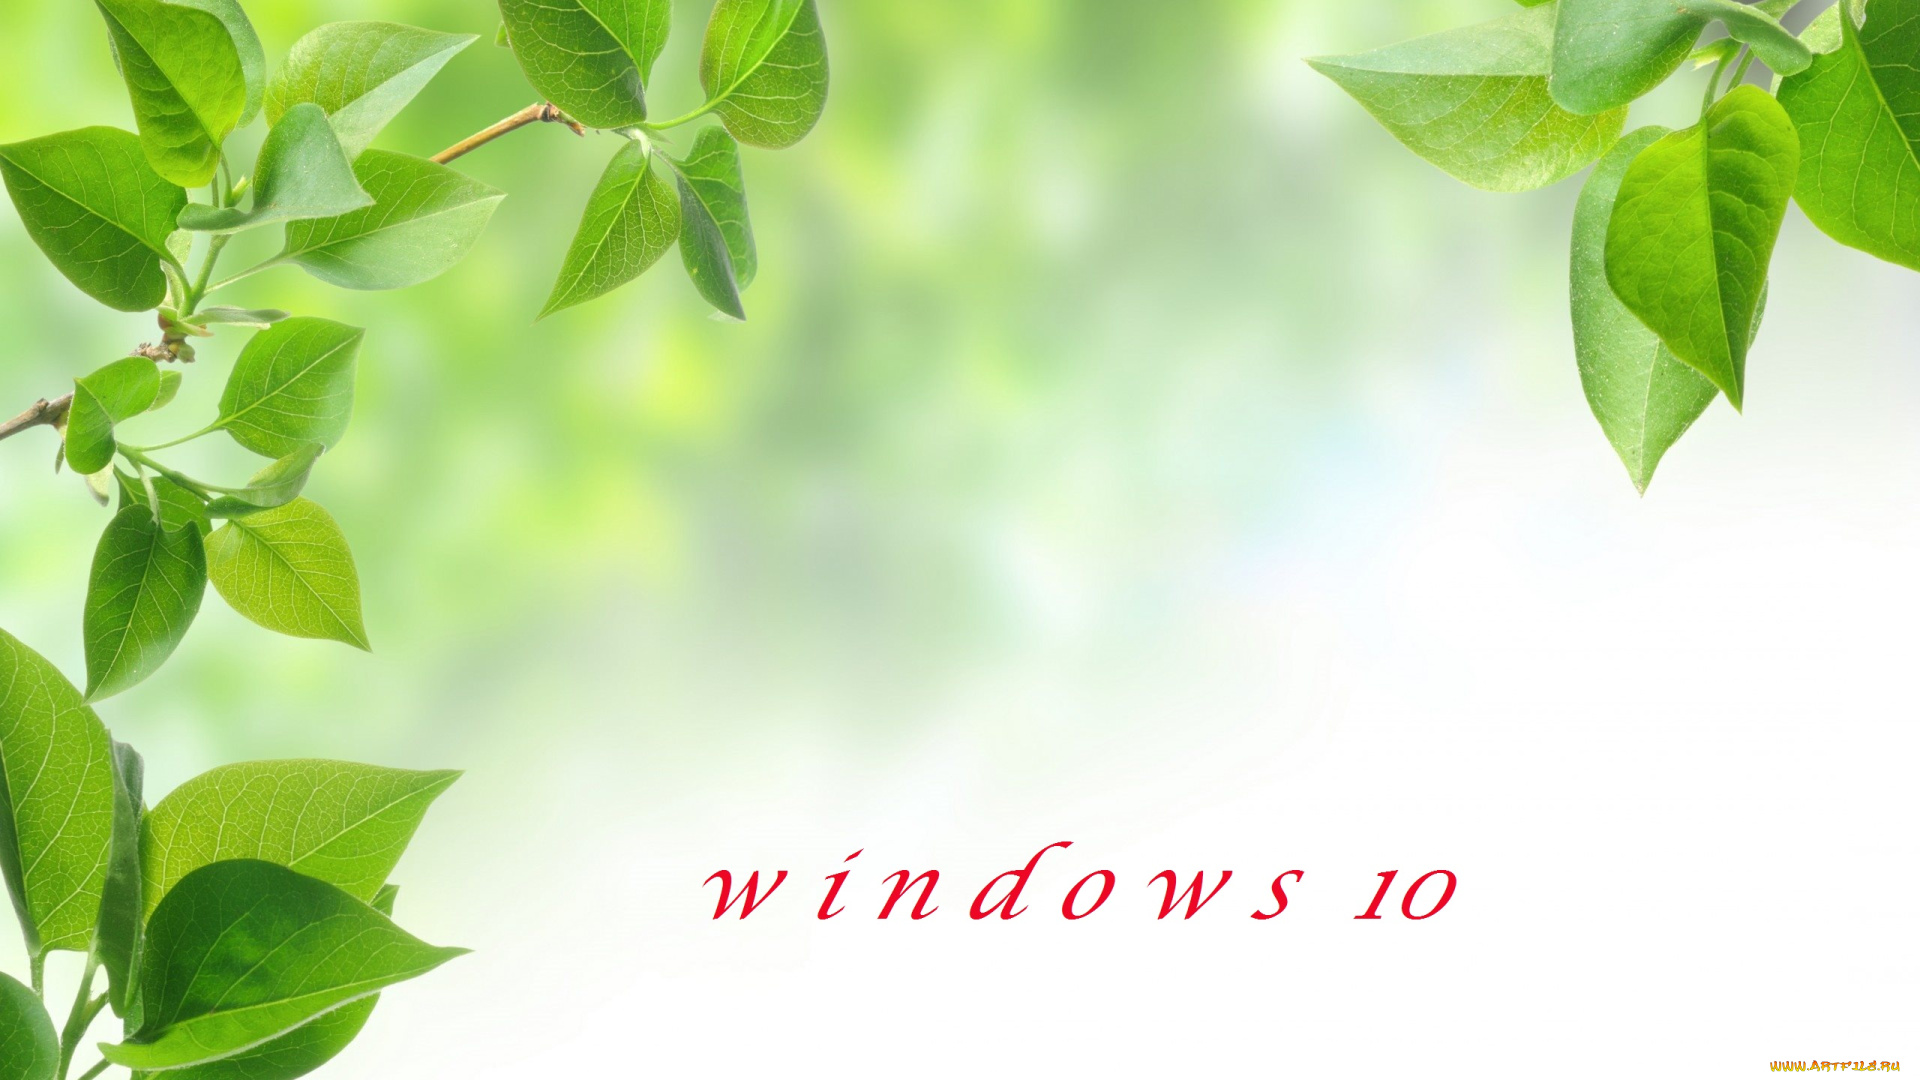 компьютеры, windows, , 10, листья, ветки, фон, логотип